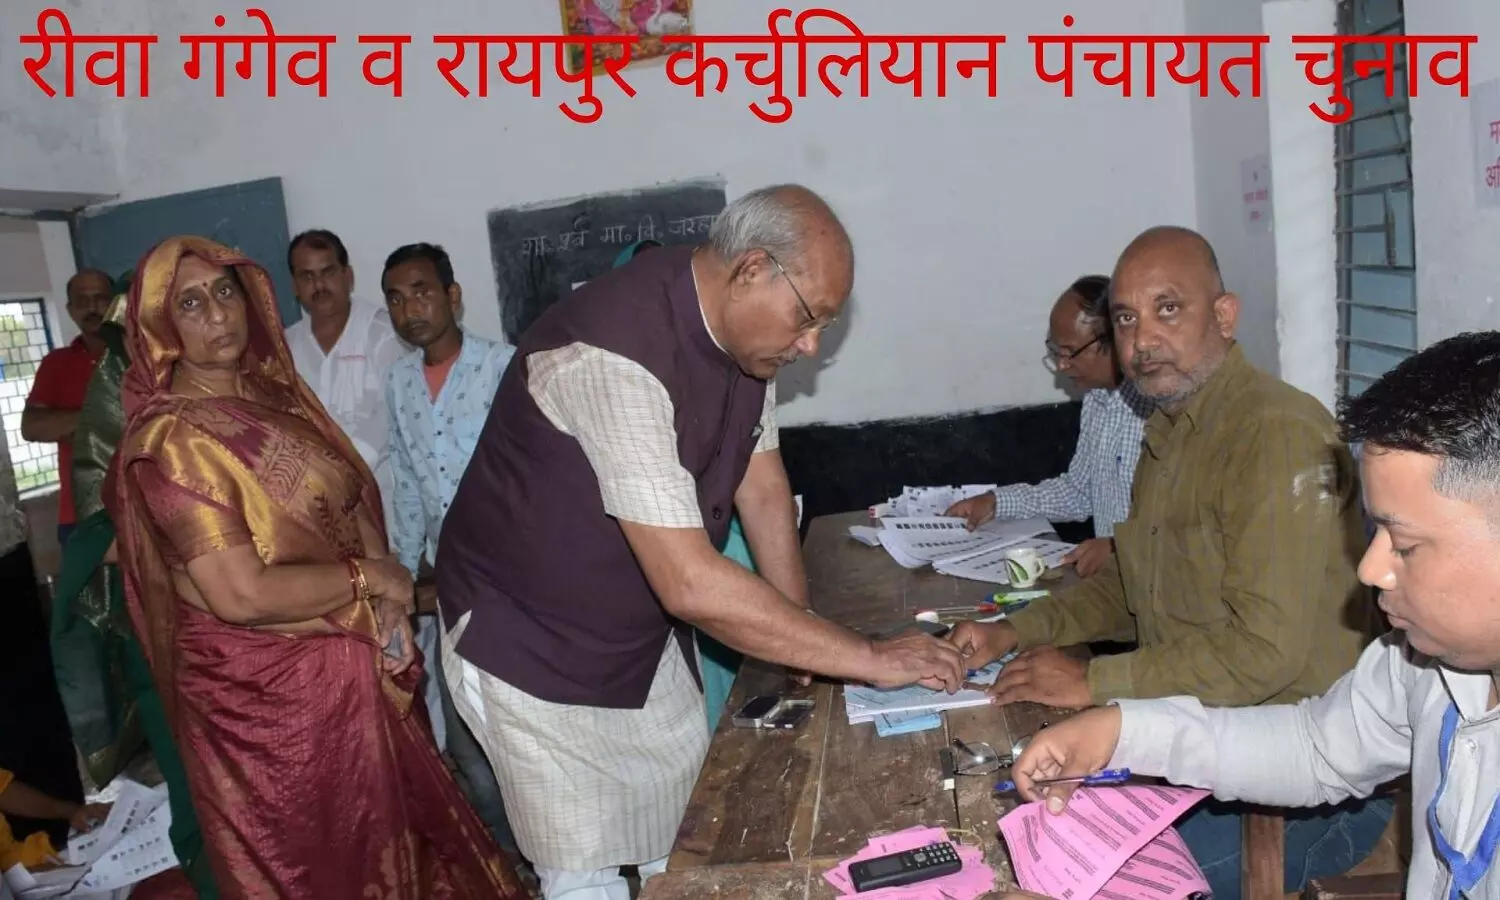 रीवा में दूसरे चरण का मतदान, मतदाताओं में अच्छा उत्साह, तिवनी गांव में फर्जी मतदान को लेकर मारपीट